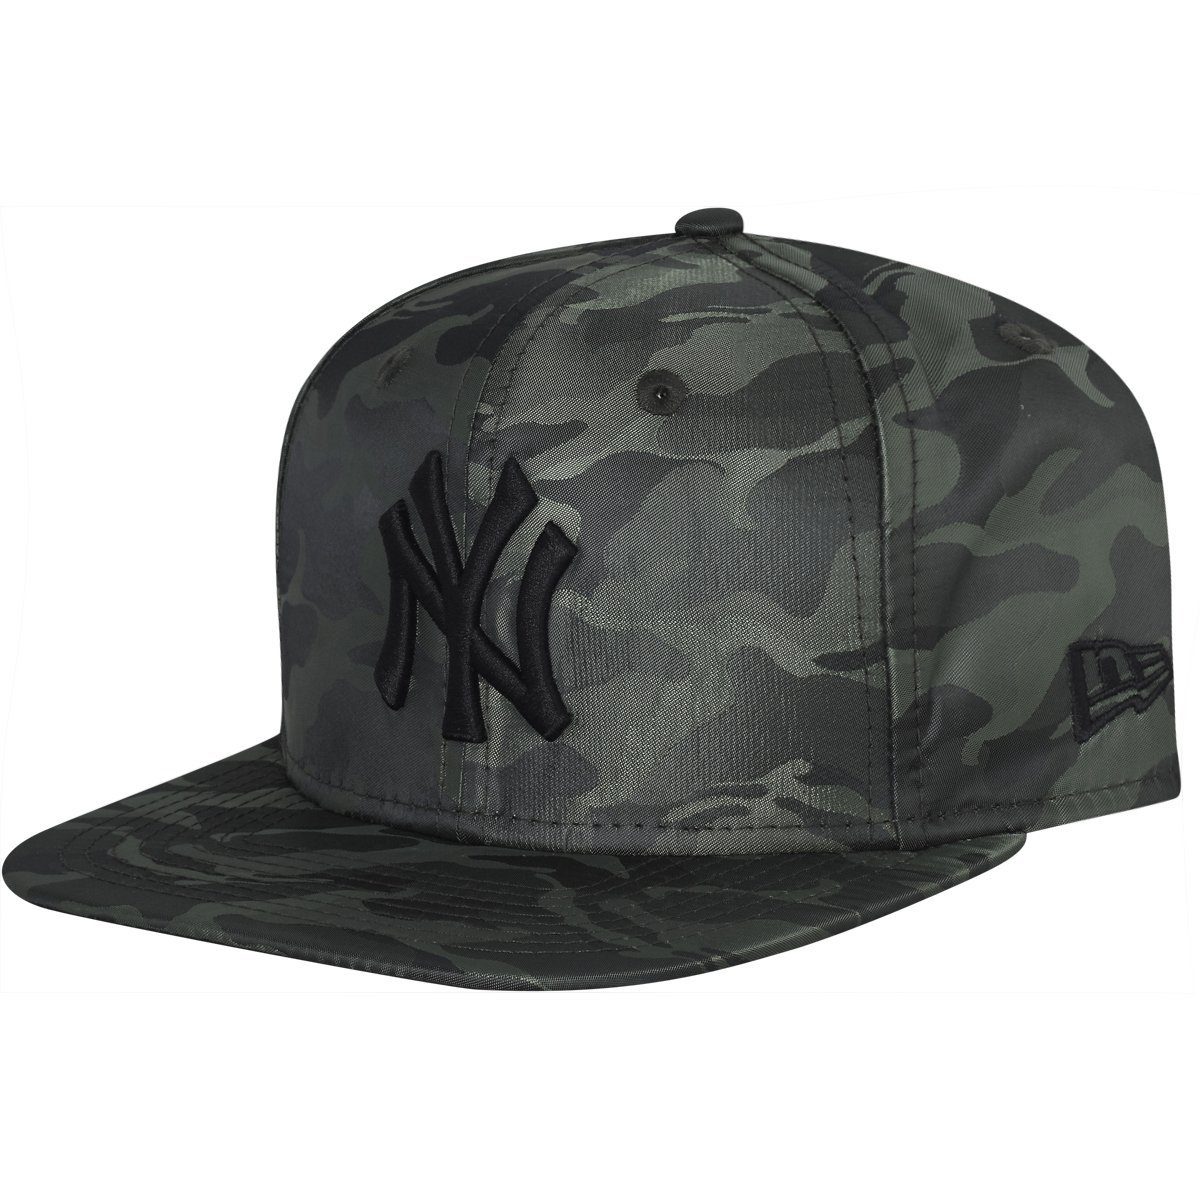 SATIN NYLON Yankees Era NY New Cap Snapback 9Fifty